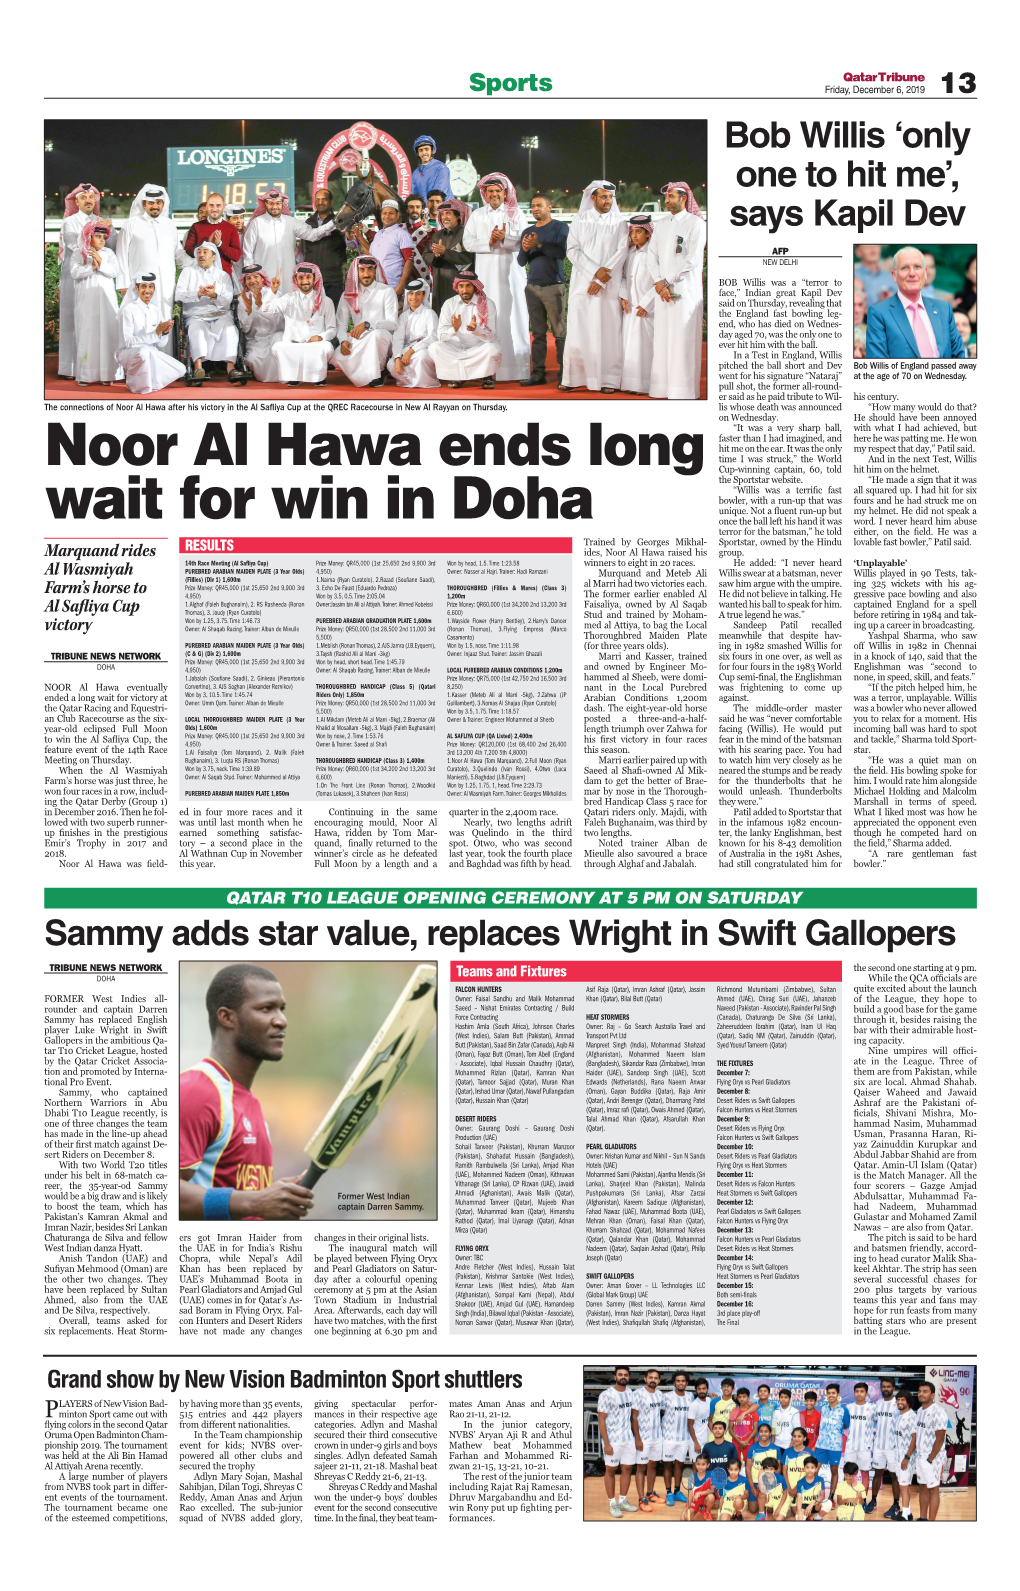 Noor Al Hawa Ends Long Wait for Win in Doha